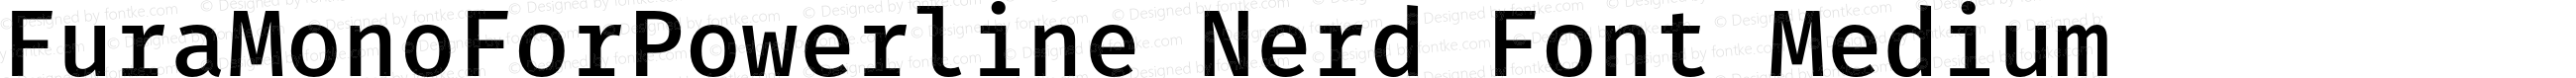 Fura Mono Medium for Powerline Nerd Font Plus Font Awesome Plus Octicons Plus Pomicons Plus Font Linux Mono